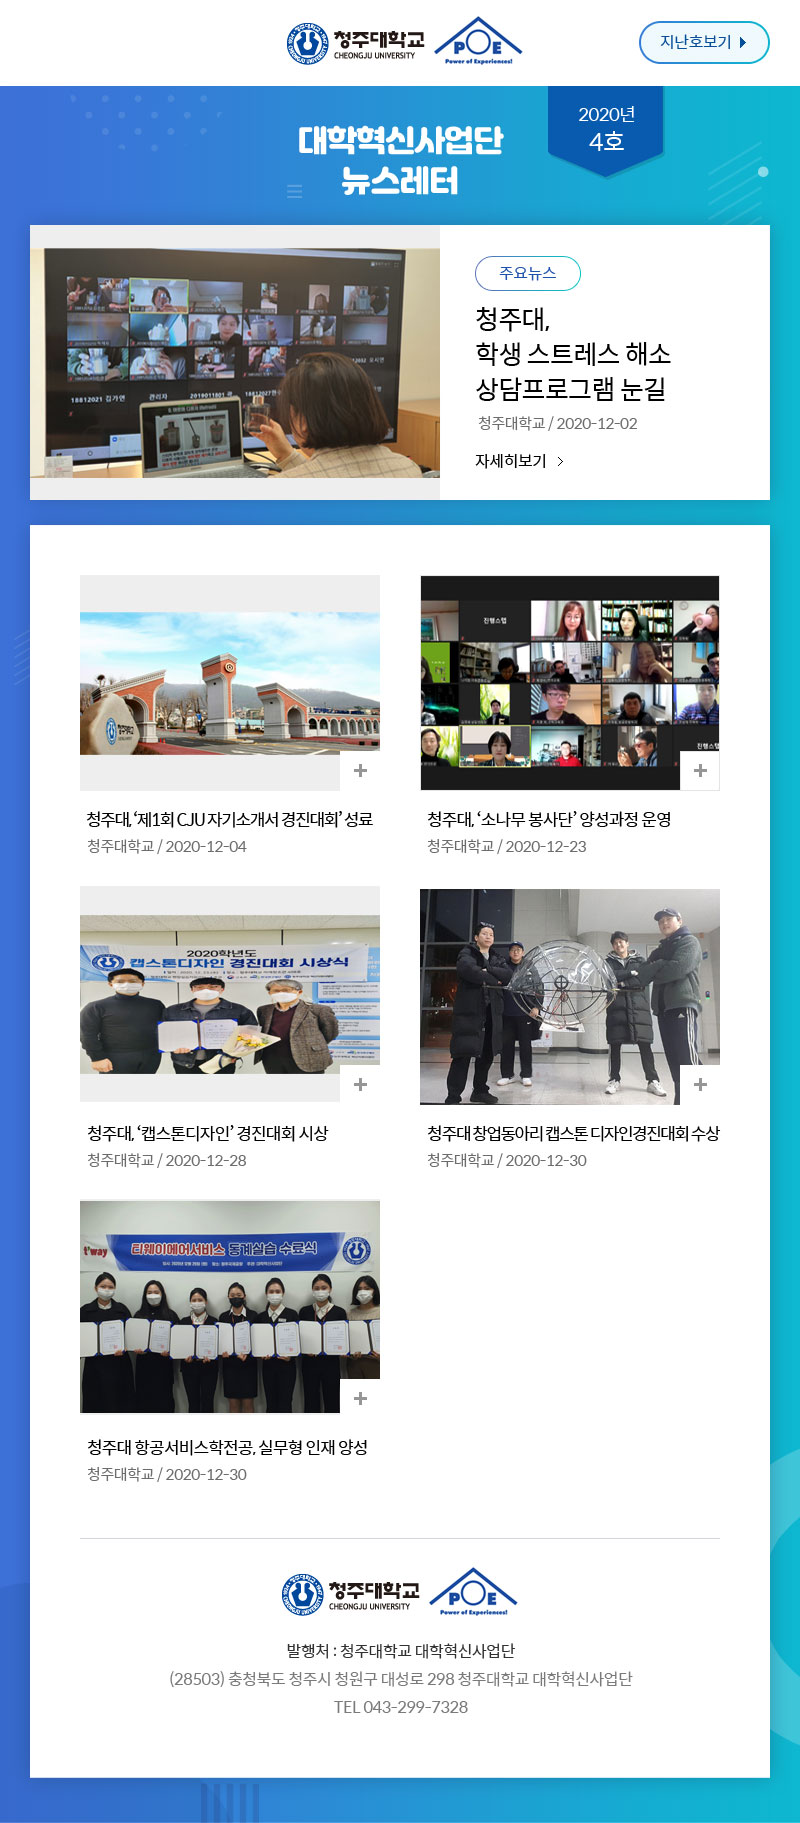 대학혁신사업단 뉴스레터 2020년 4호 뉴스레터